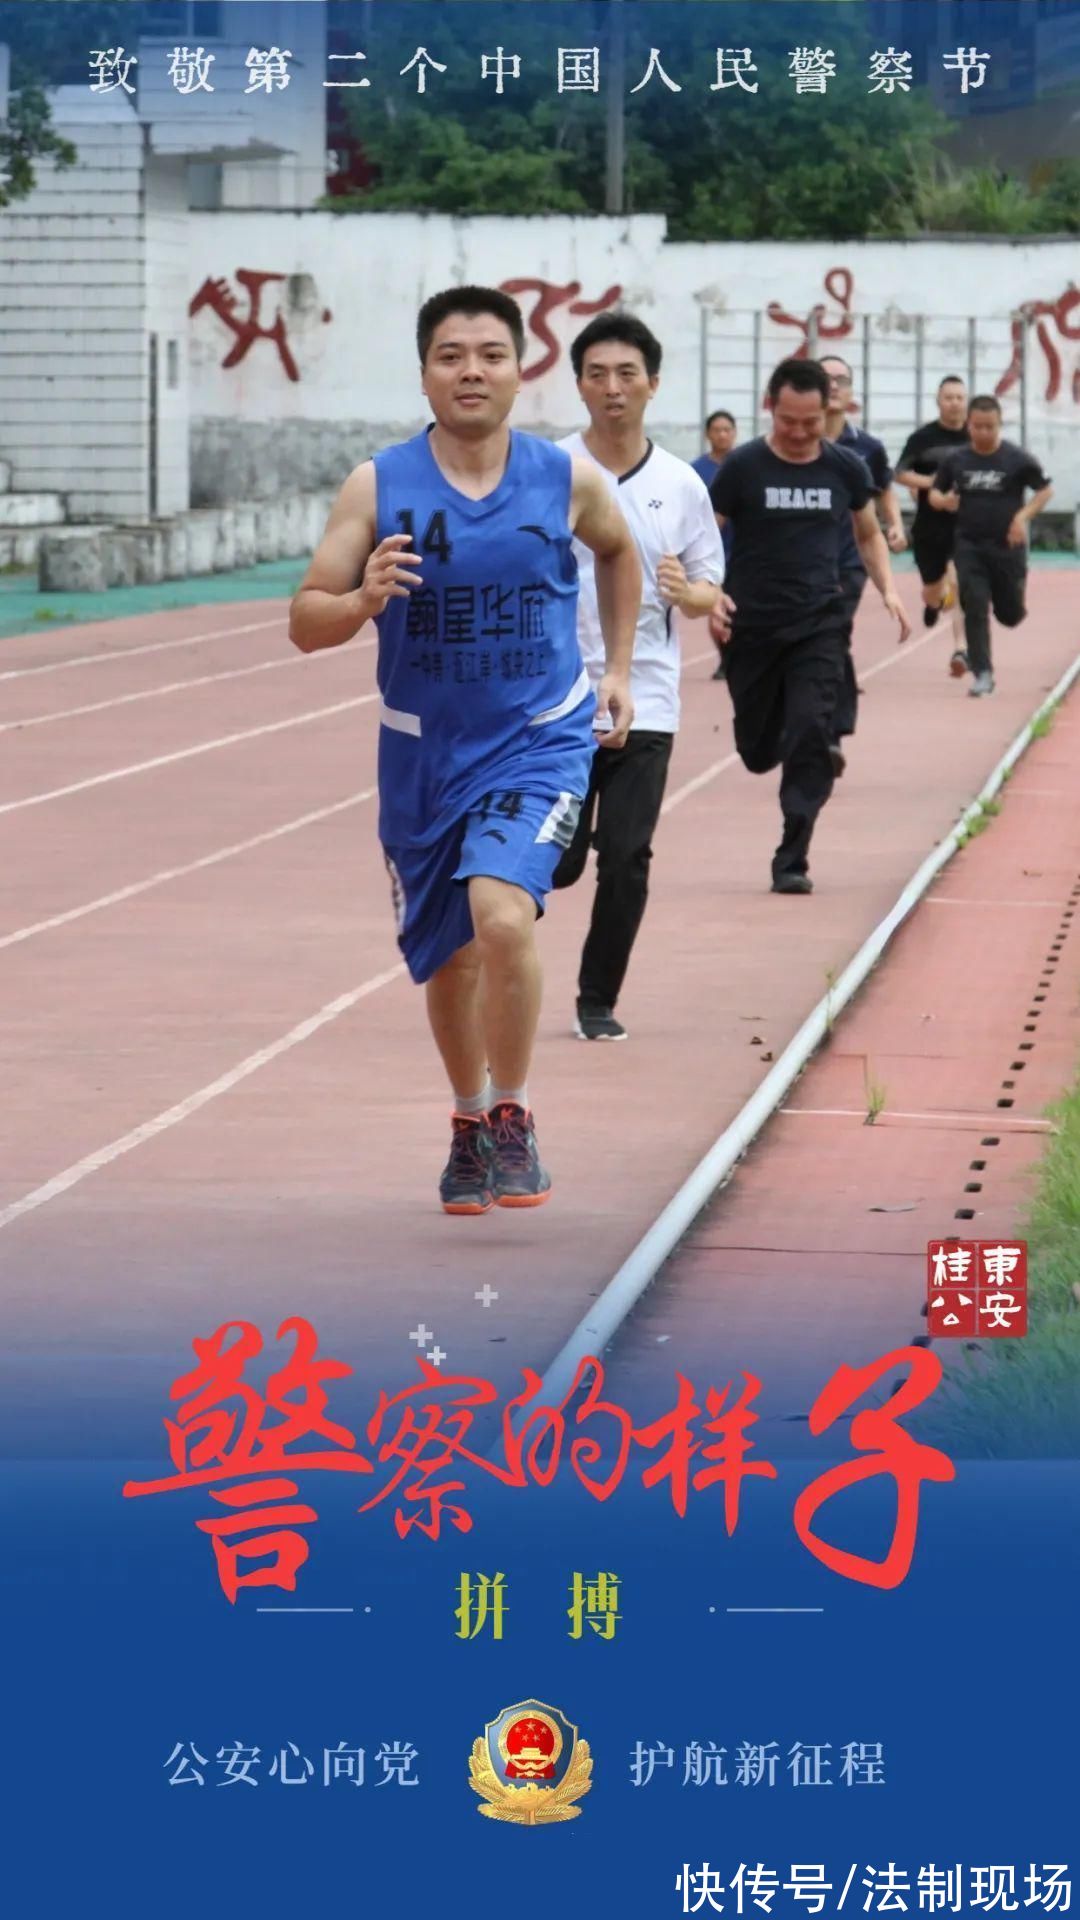 中国人民警察节|「致敬第二个中国人民警察节」人民警察的样子